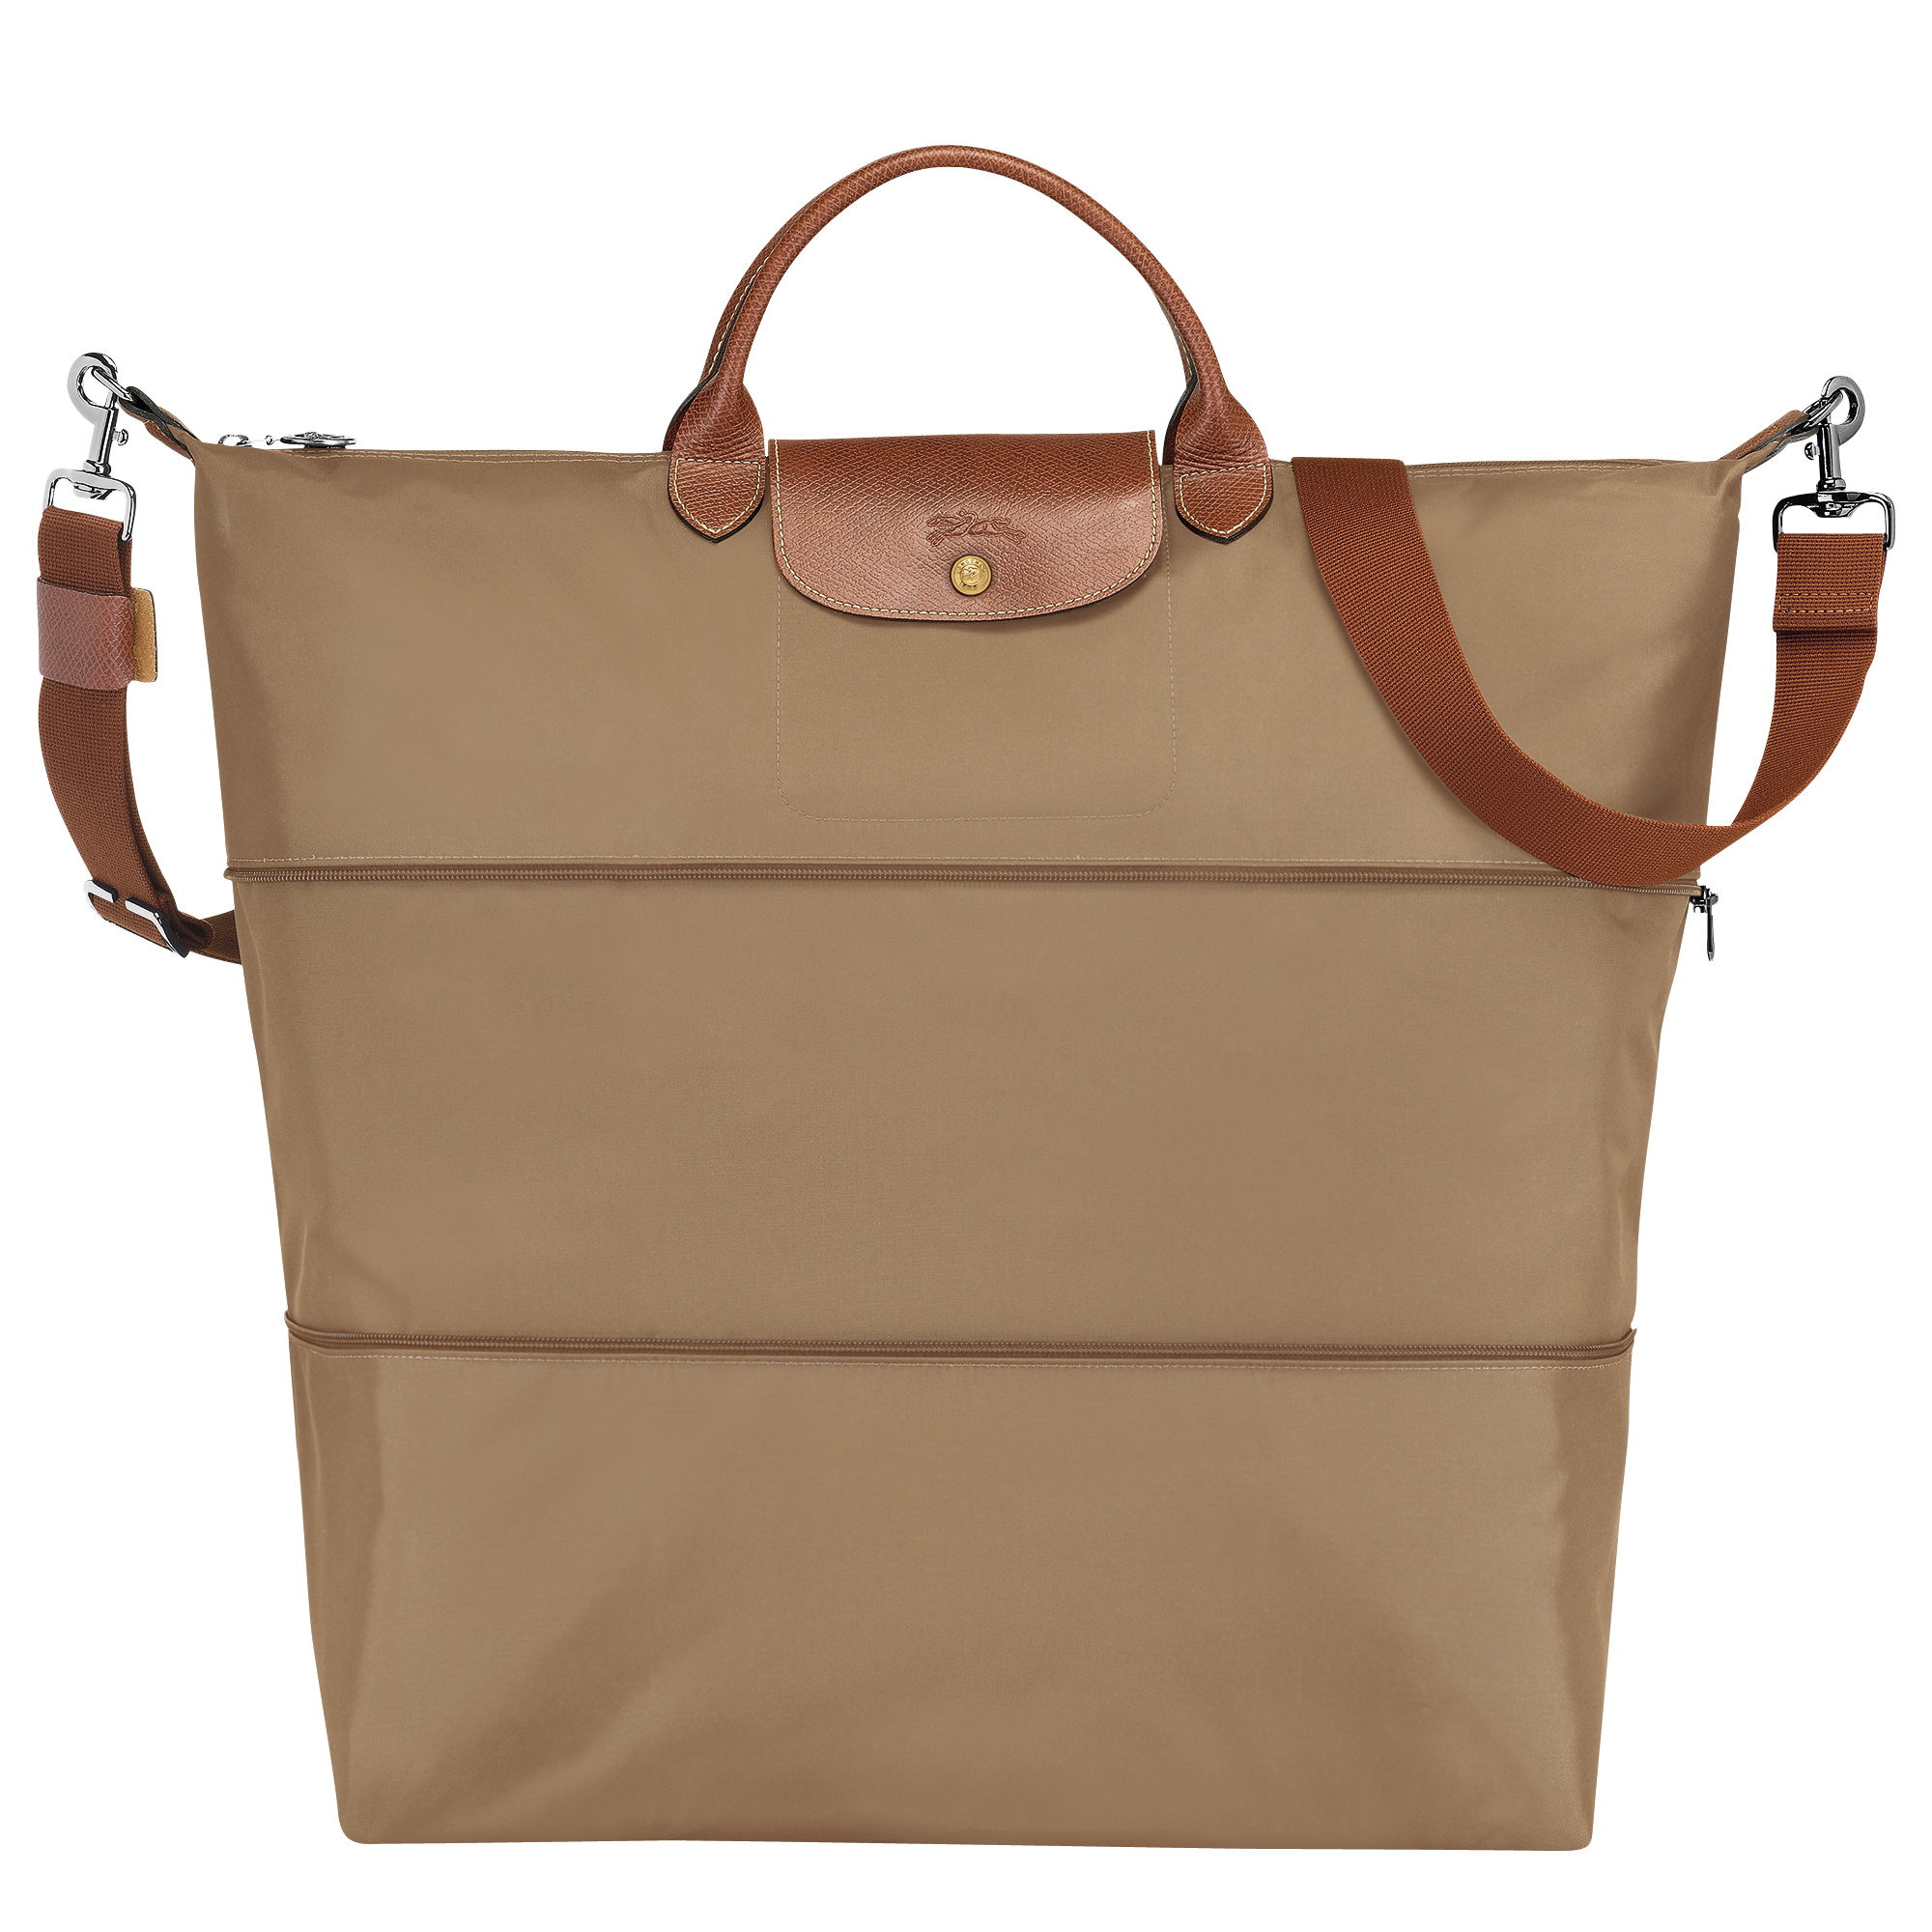 longchamp tote bag